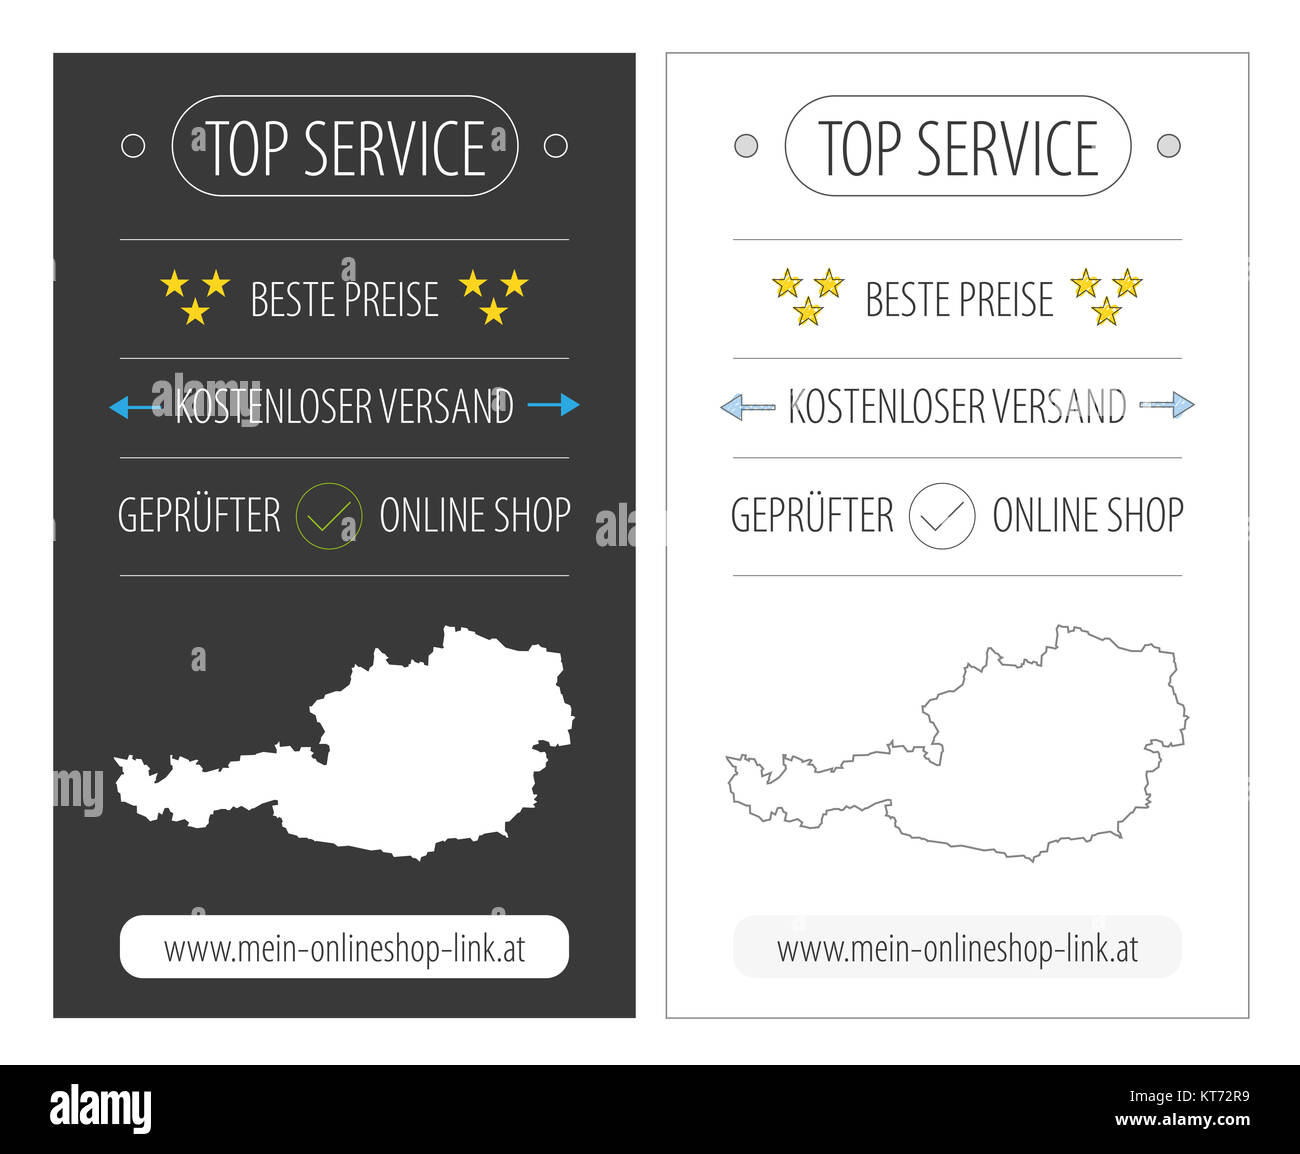 Österreichs Top-Service e-Commerce-Banner Abbildung in zwei Varianten Stockfoto